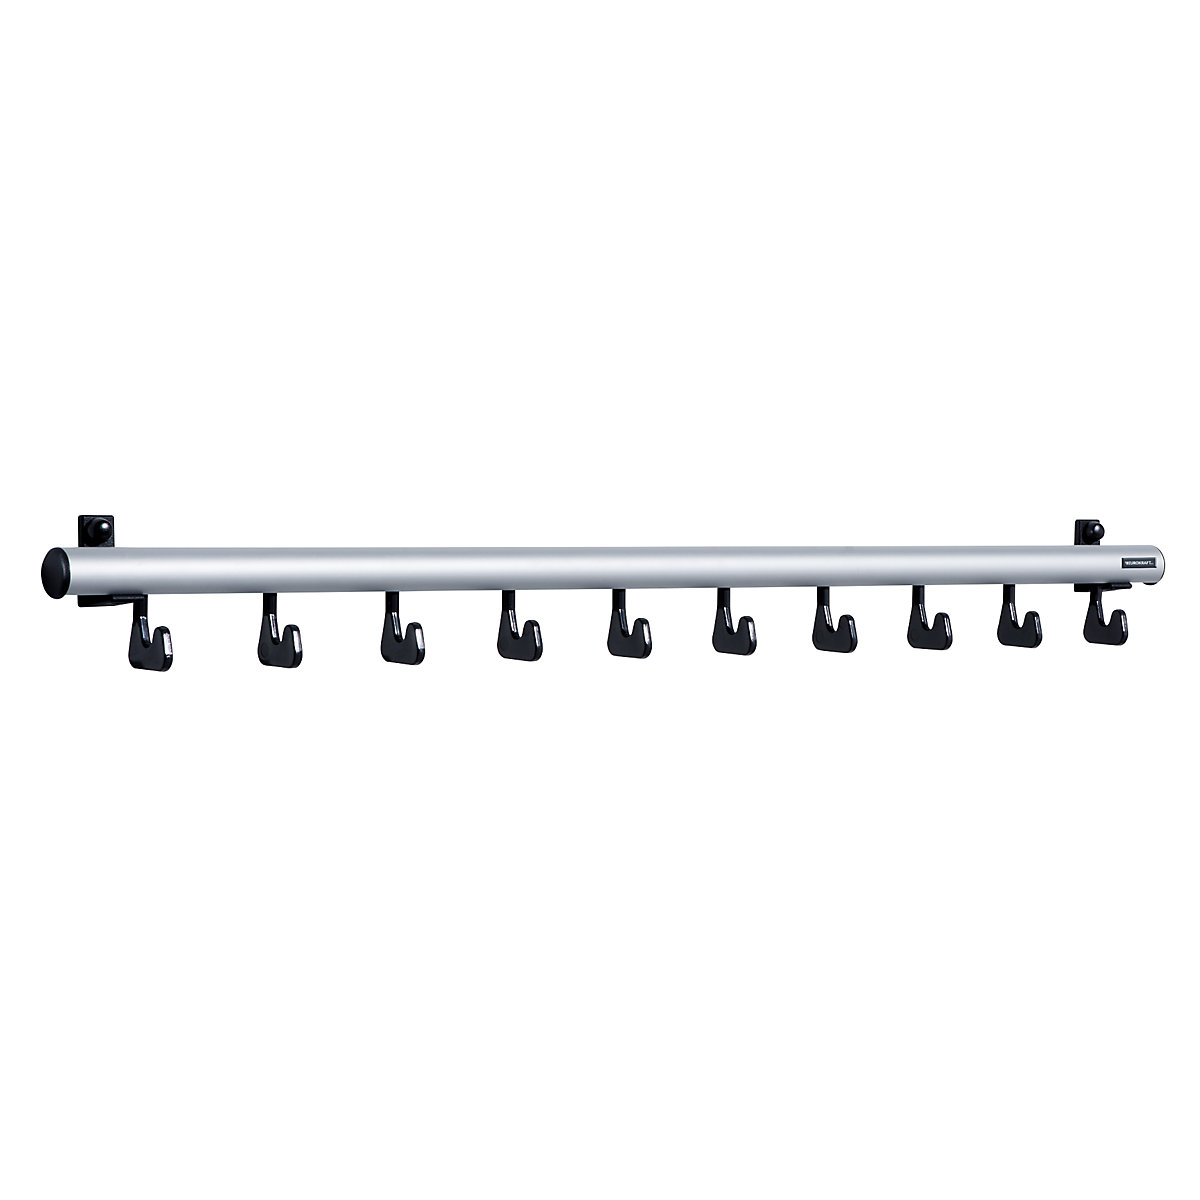 Wall mounted coat rack – eurokraft pro, HxD 80 x 80 mm, 10 hooks, width 1000 mm, pack of 1-4